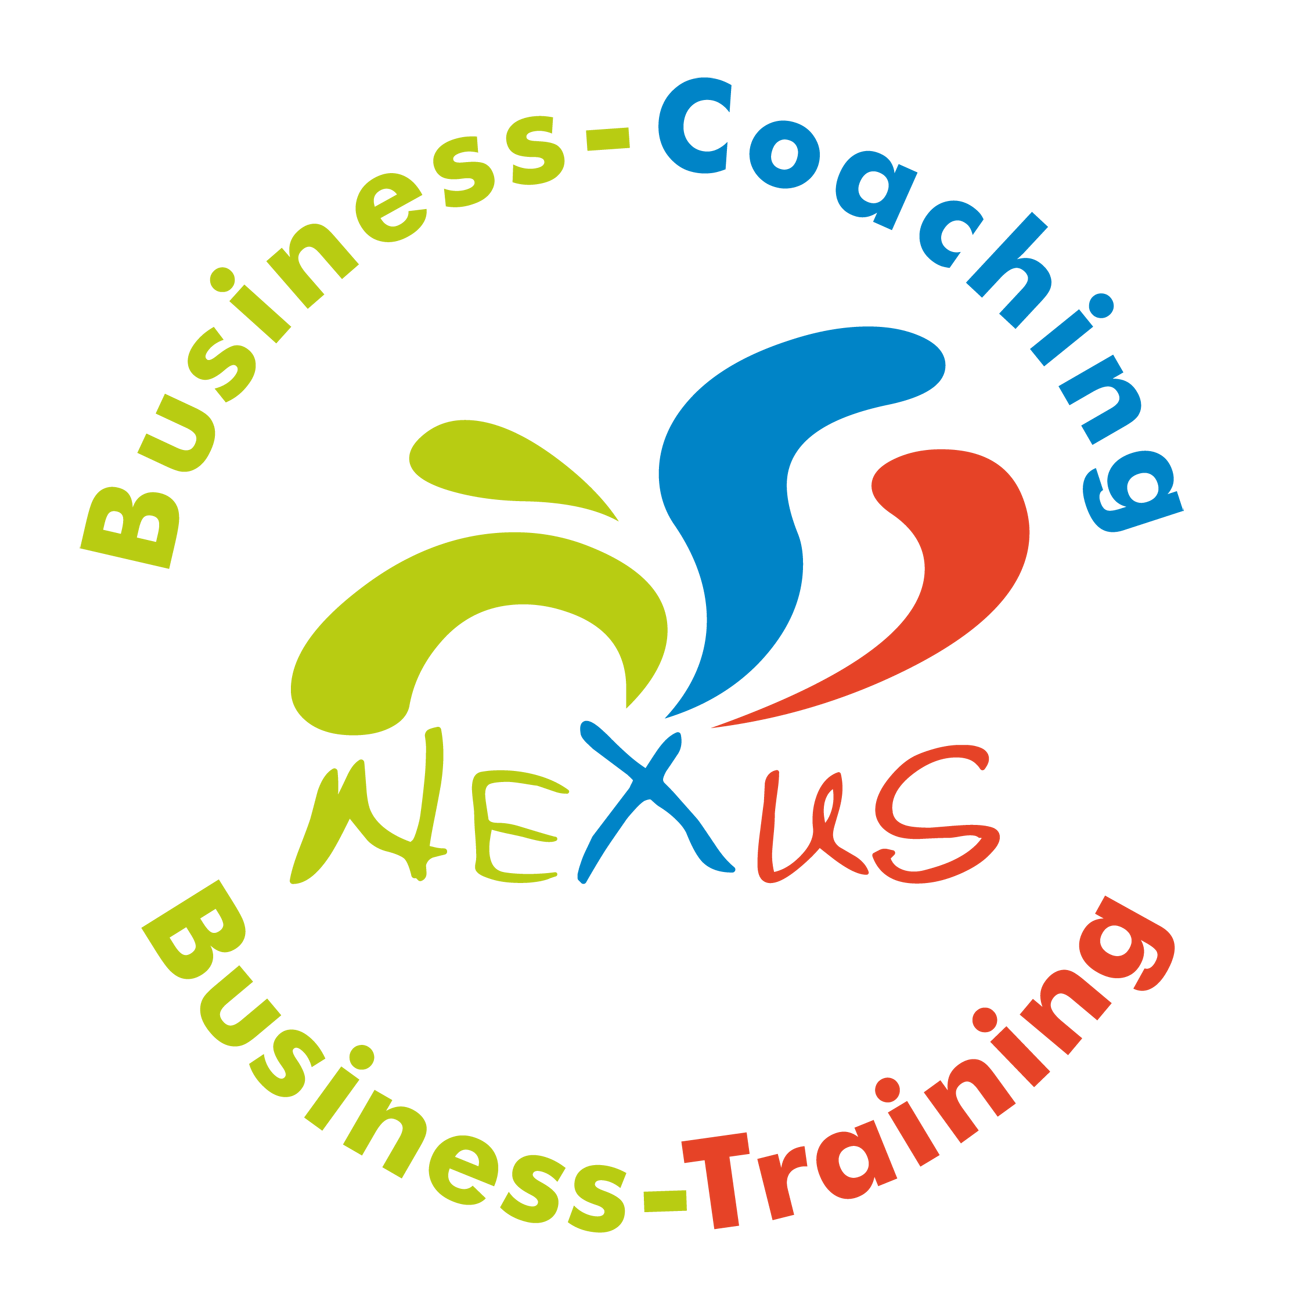 Business-Coaching Schweinfurt, Business-Einzelcoaching, Business-Training, Führungskräfte-Coaching Schweinfurt, Führungskräfte-Training, Kommunikationstraining, Persönlichkeitstraining